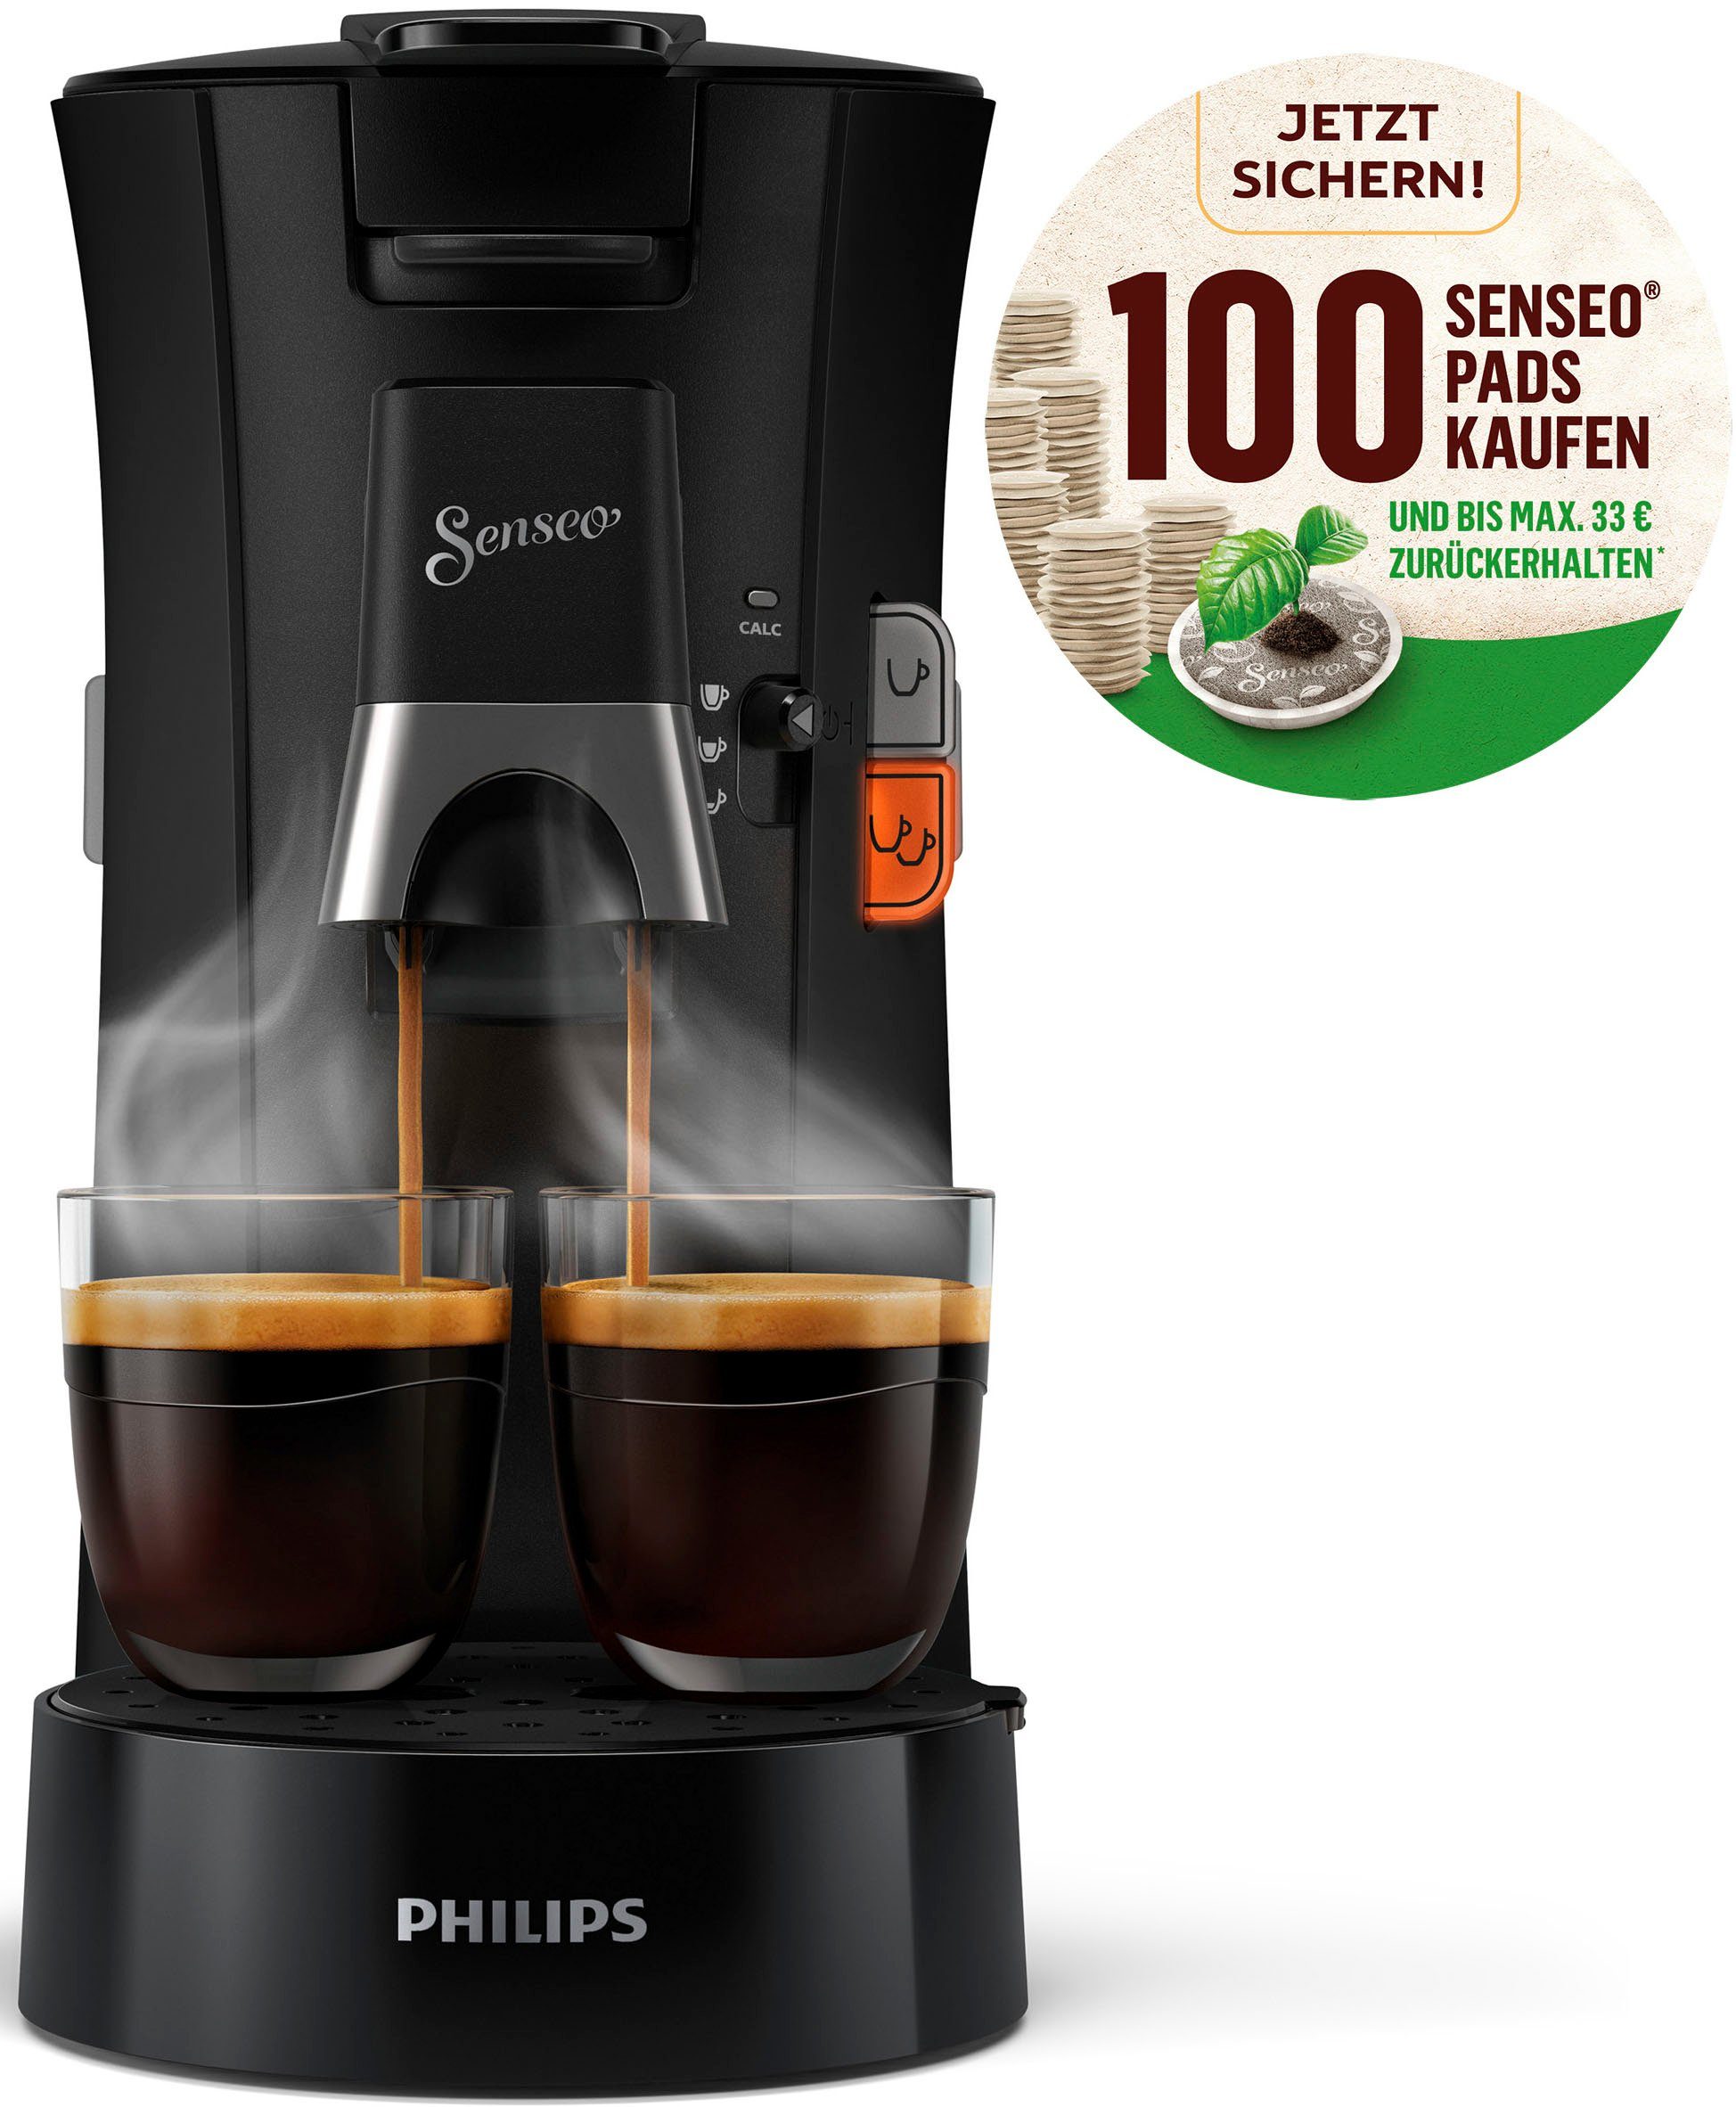 Philips Senseo Kaffeepadmaschine Select CSA230/69, aus 21% recyceltem Plastik, +3 Kaffeespezialitäten, und Crema Plus, 100 Senseo Pads kaufen und bis max.33 € zurückerhalten | Kaffeepadmaschinen